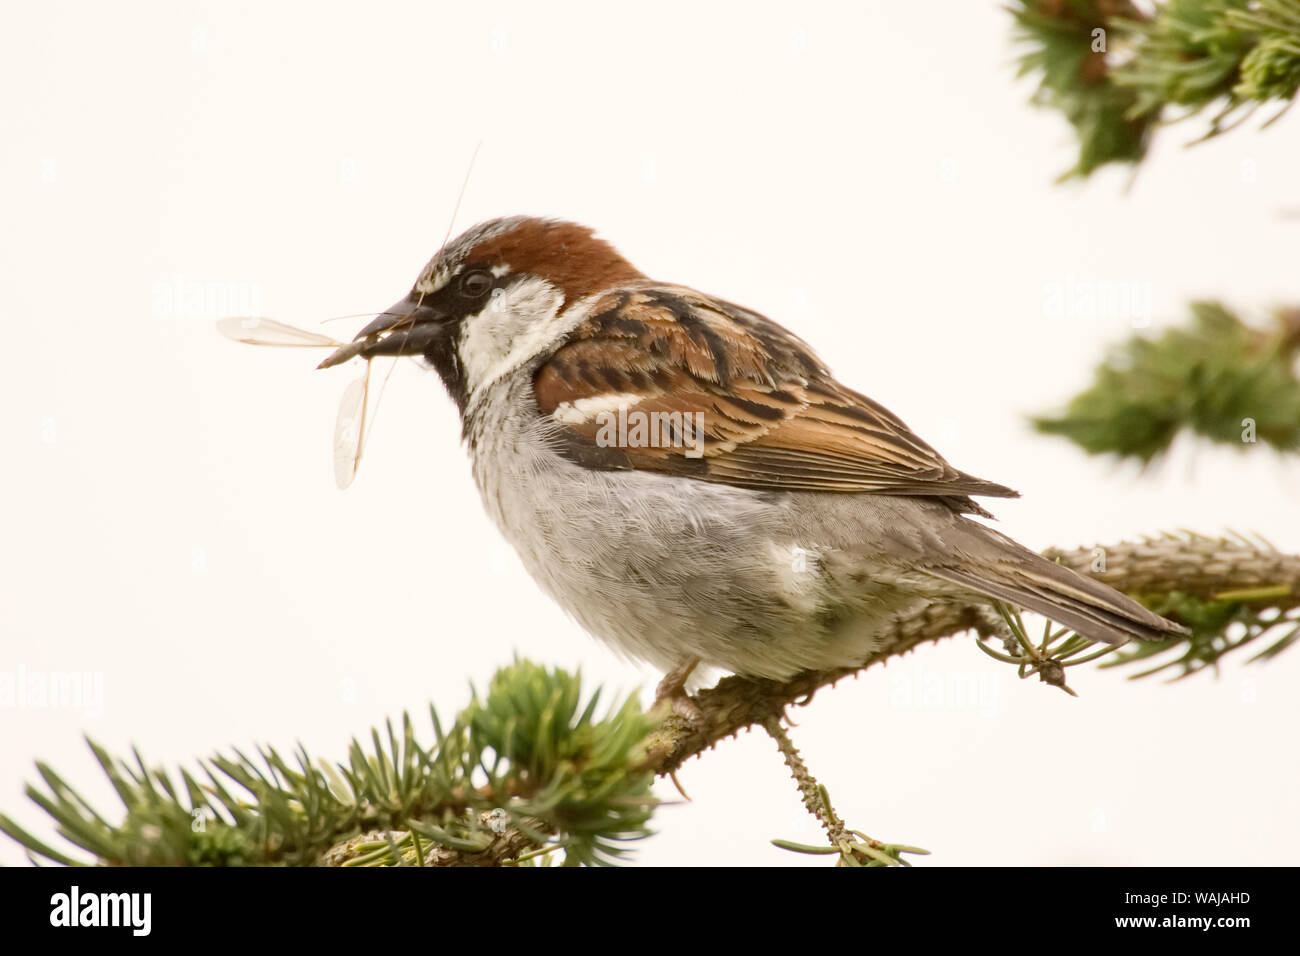 George Reifel uccello migratore Santuario, British Columbia, Canada. Casa passero seduto su un ramo di mangiare un insetto. Foto Stock